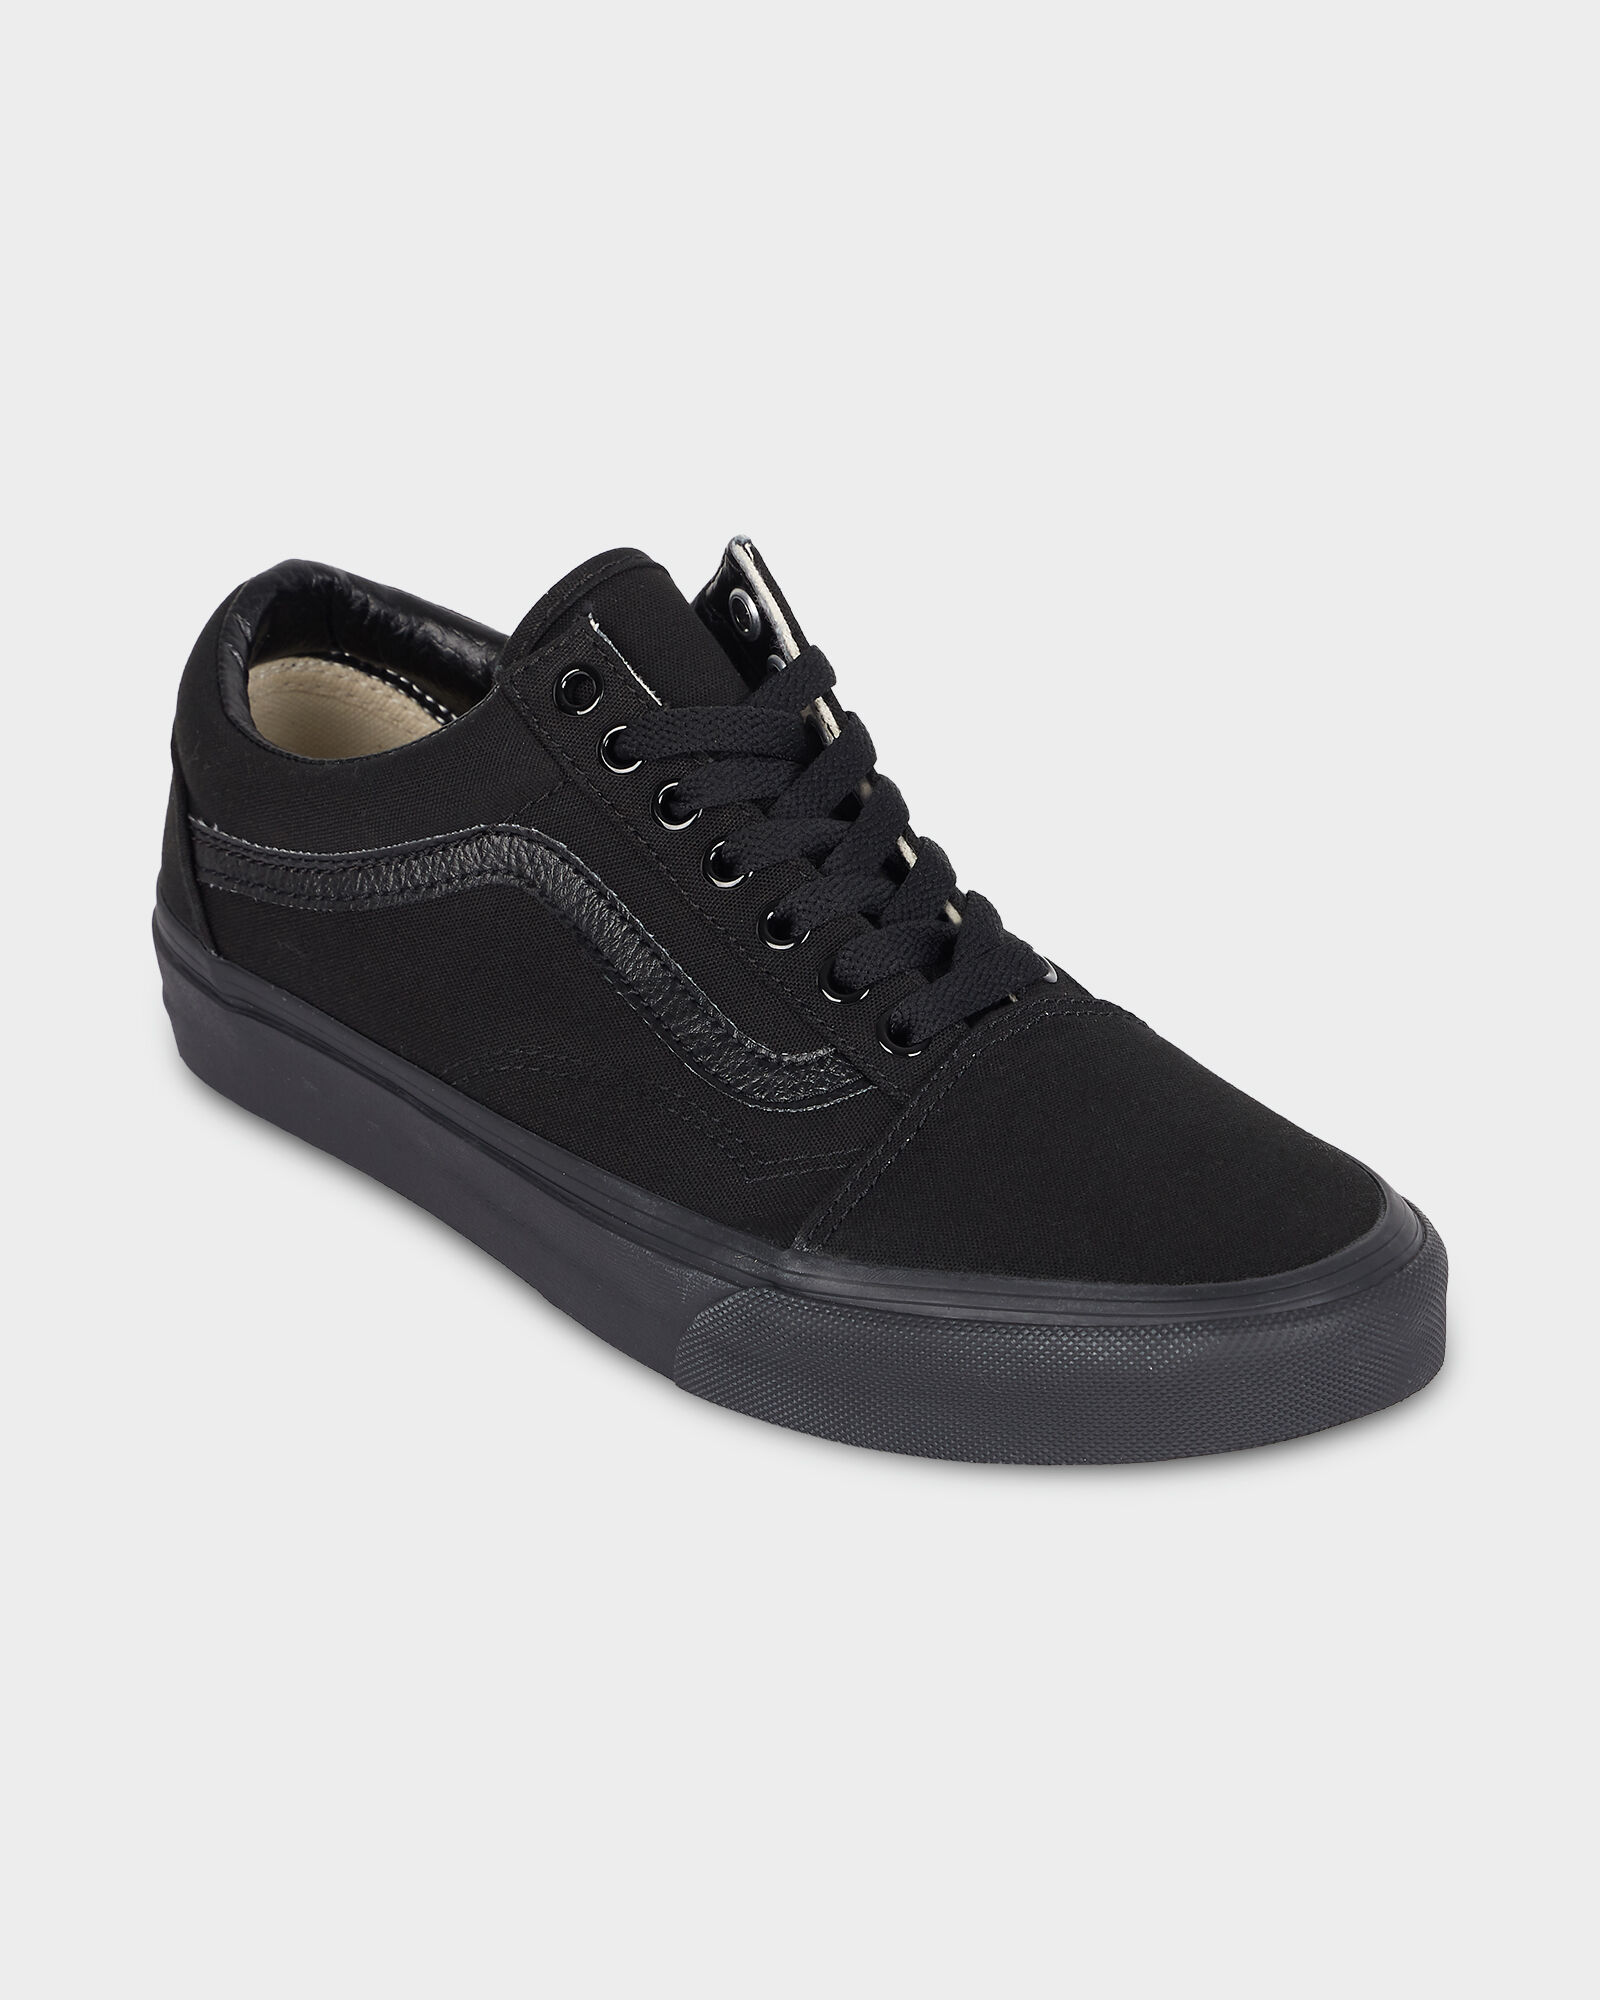 plain black vans shoes